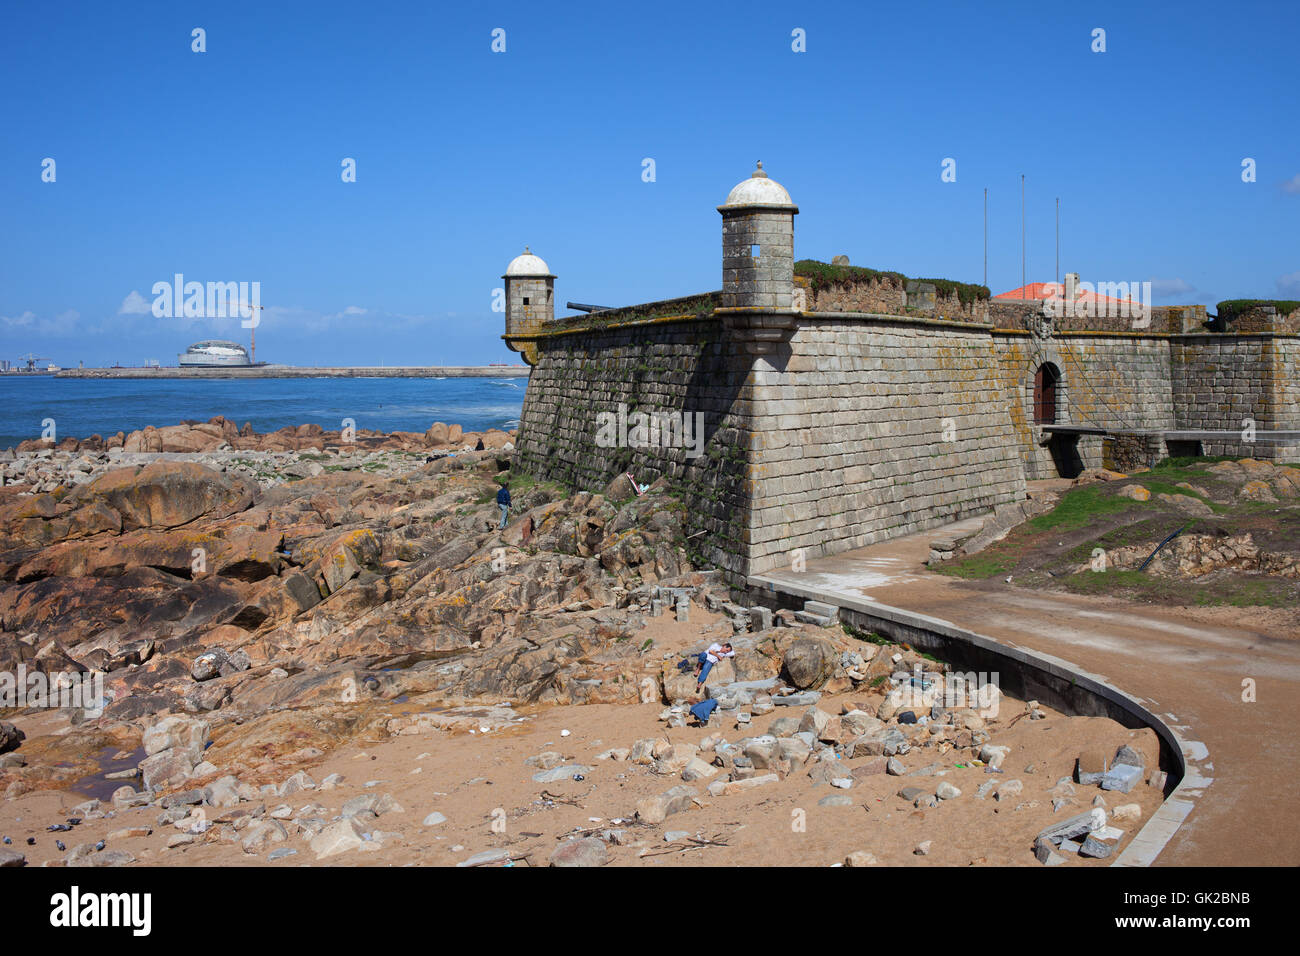 Queijo Castillo (Forte de Sao Francisco Xavier) por el Océano Atlántico en el municipio de Porto, Portugal Foto de stock